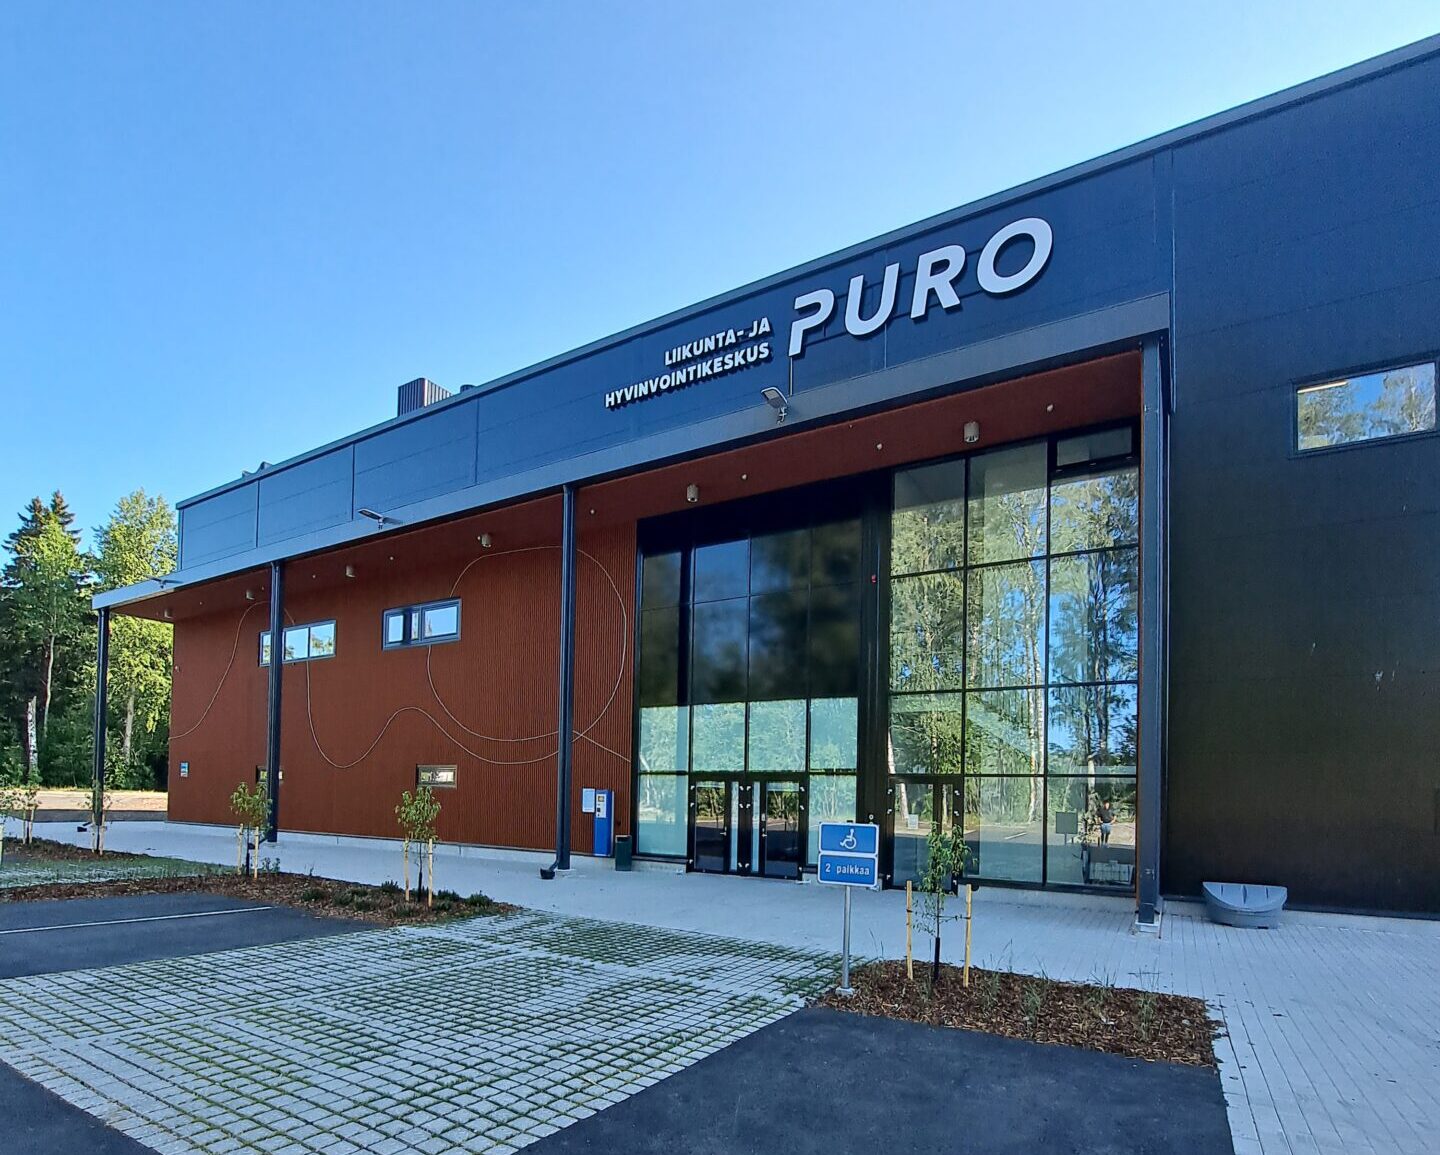 Liikunta ja hyvinvointikeskus Puro on liikuntahalli Helsingin Myllypurossa.